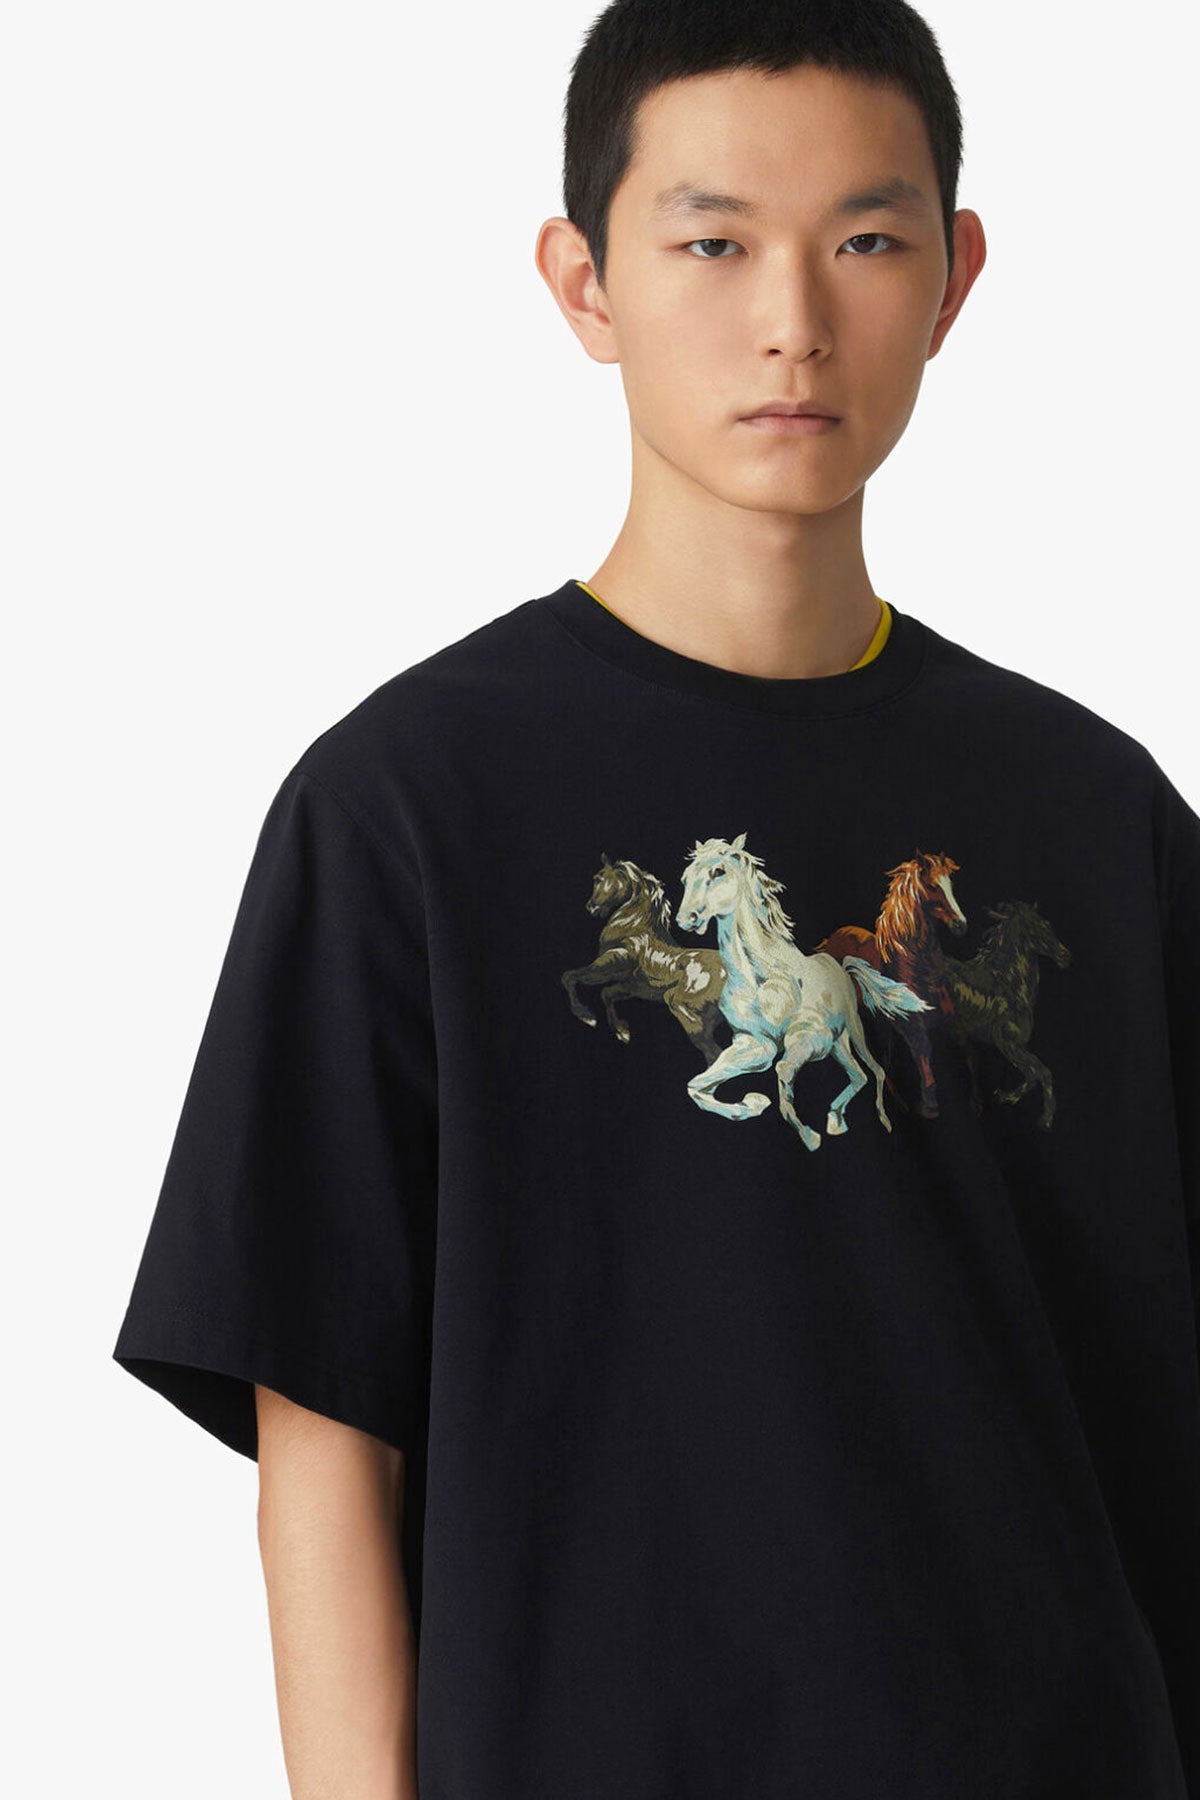 Kenzo Horses T-shirt-Libas Trendy Fashion Store